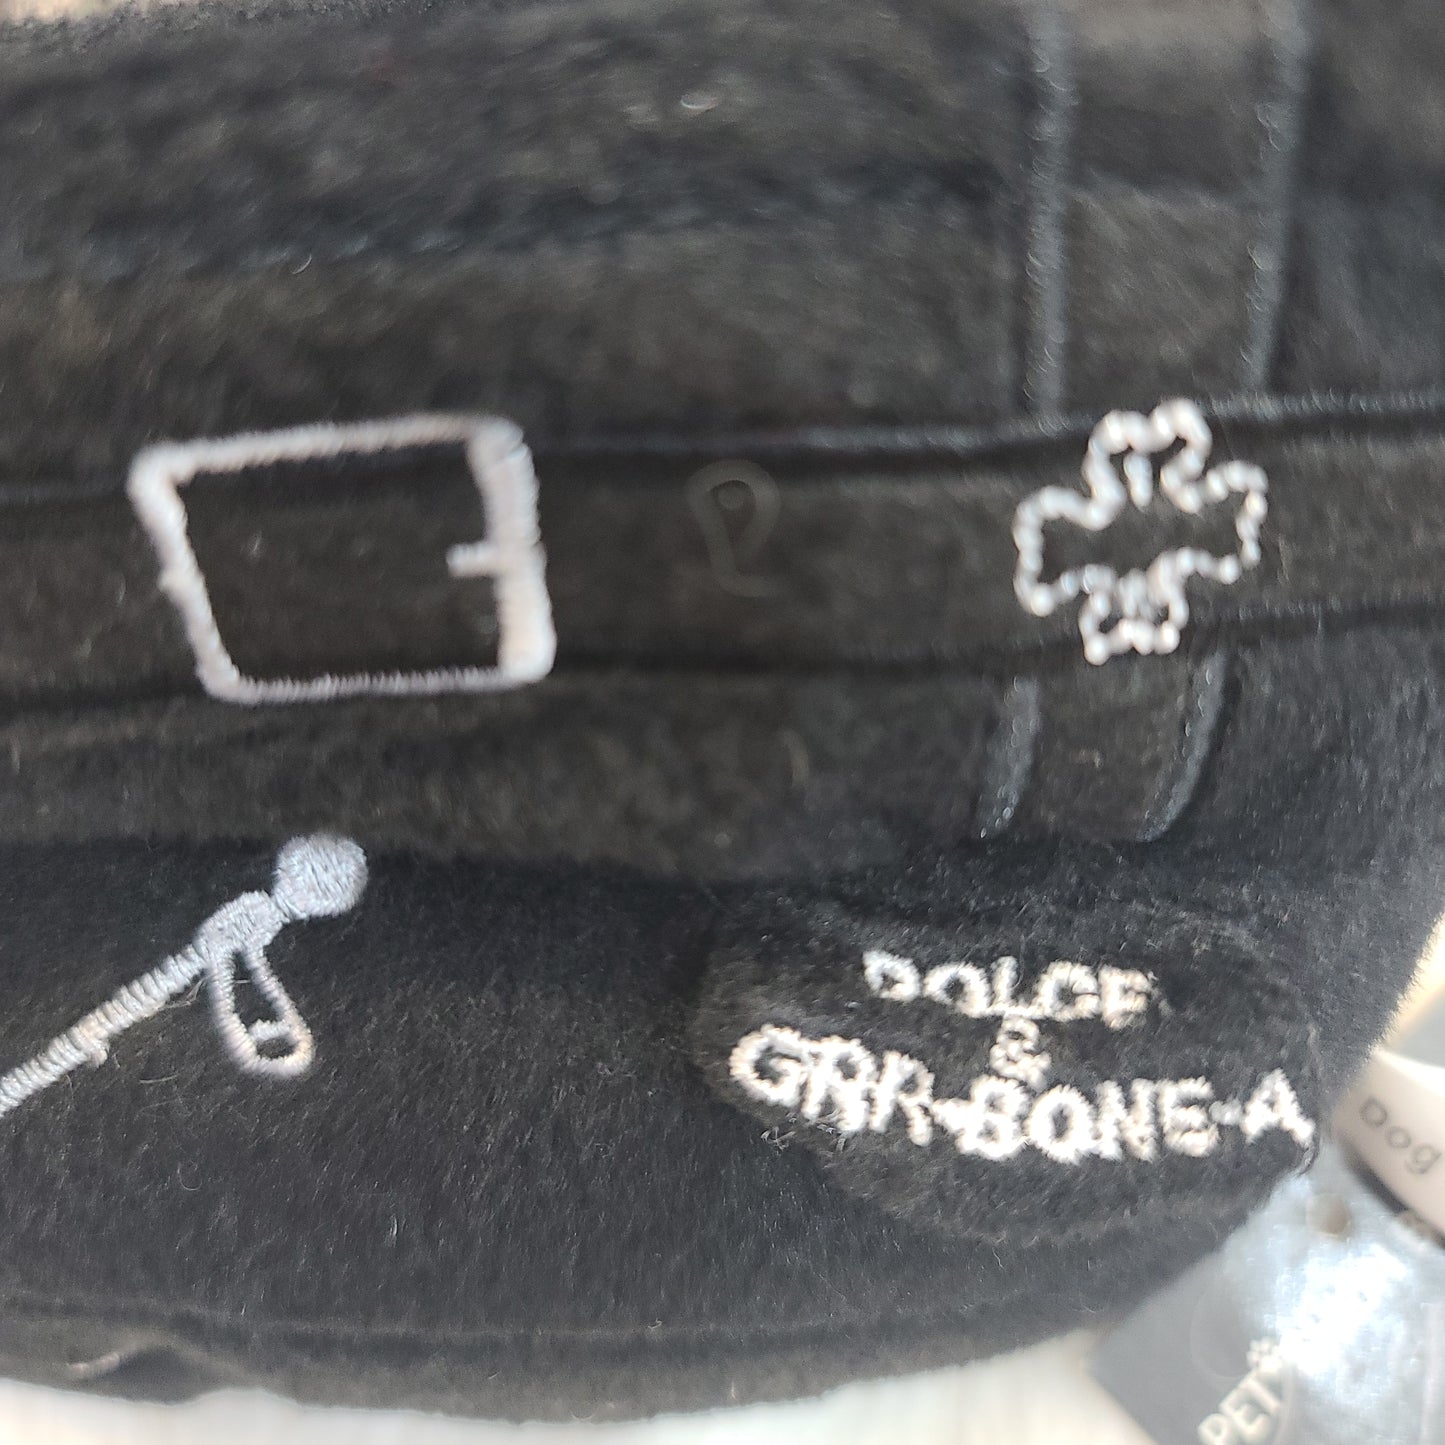 Dolce Grr-Bone-a-Bag Toy